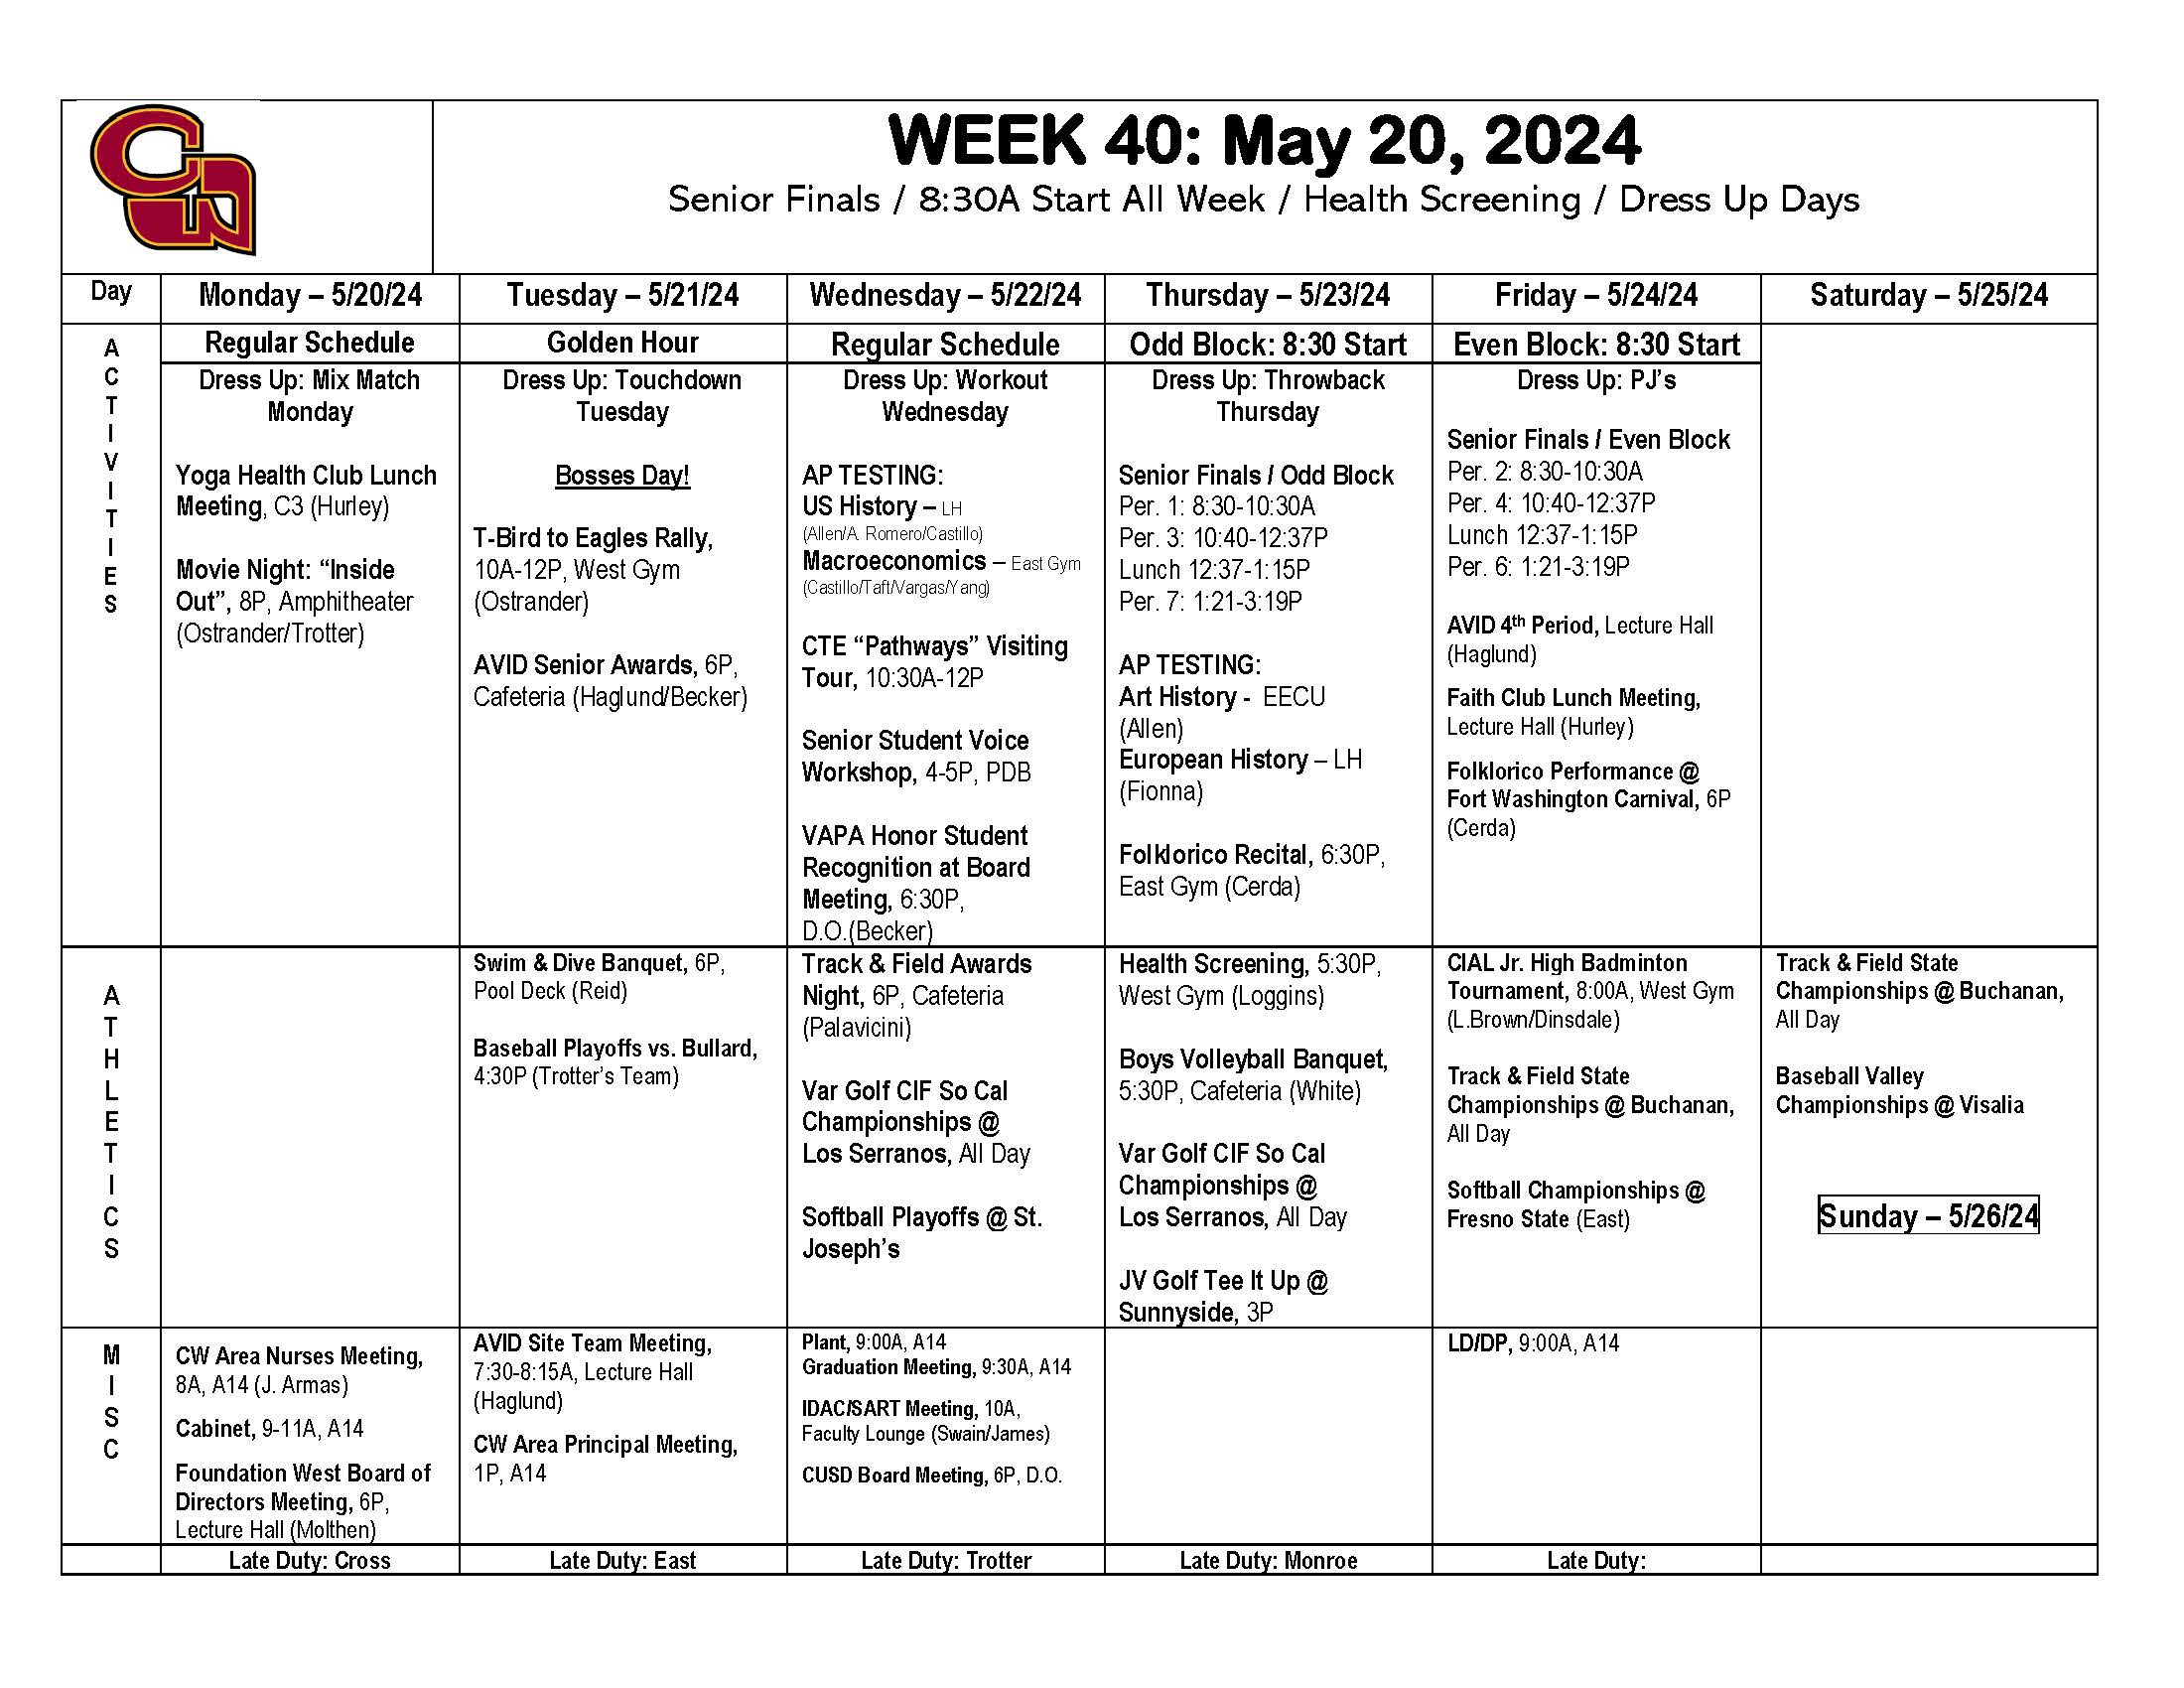 Week of May 20